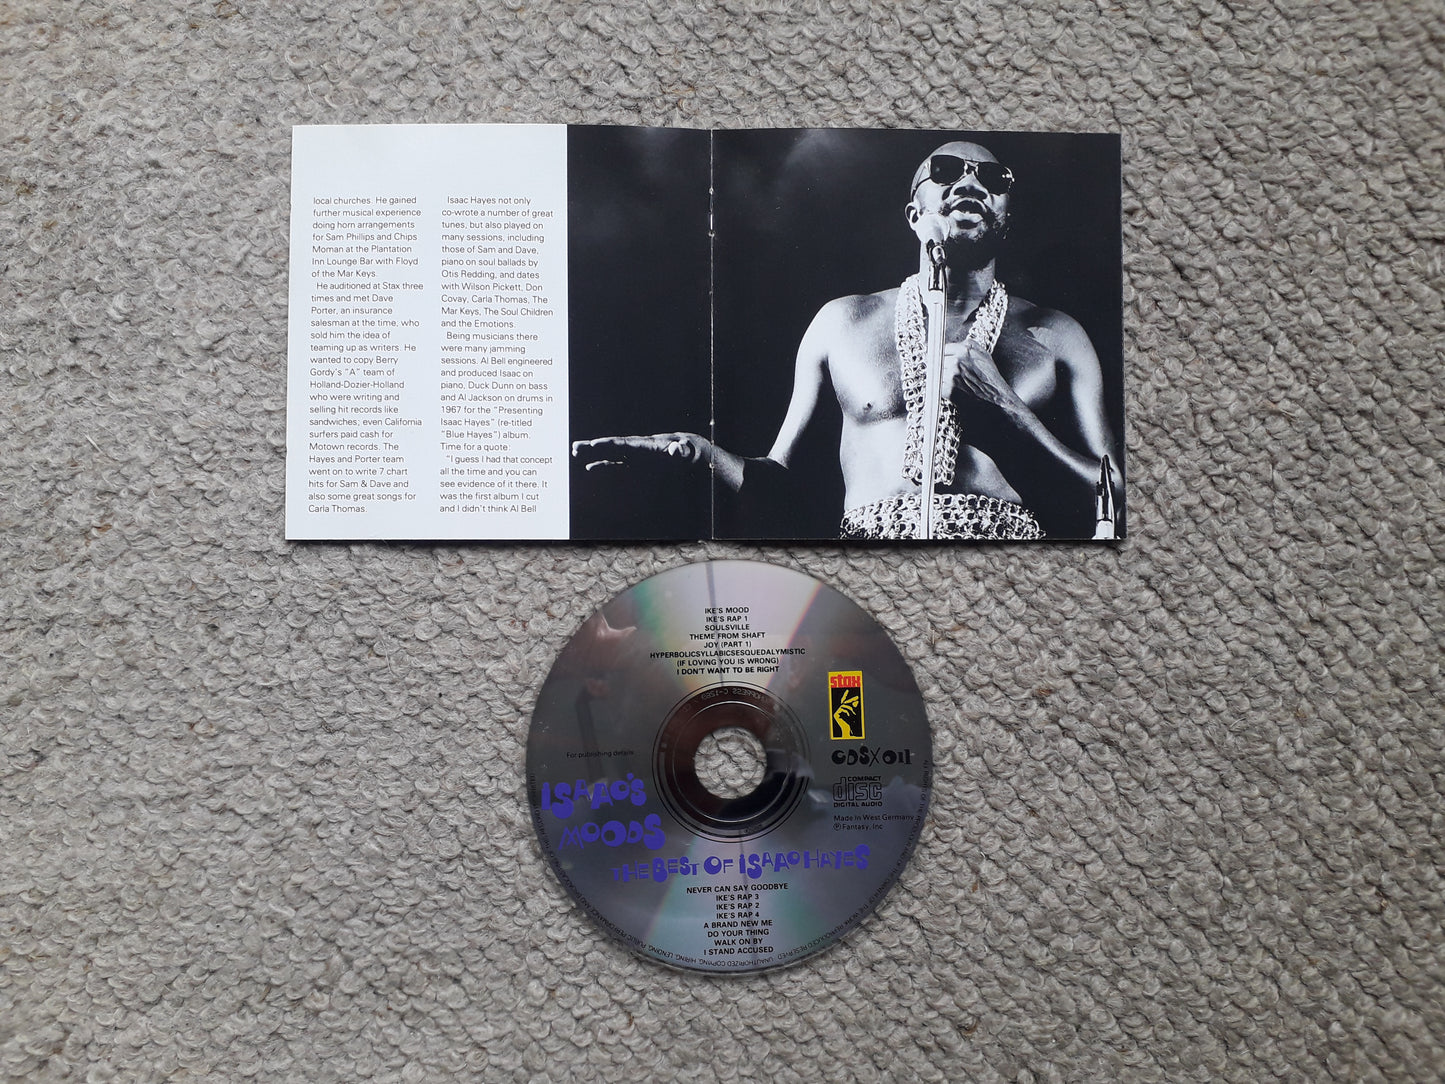 Isaac Hayes-Isaac's Moods, The Best Of Isaac Hayes CD (CDSX 011)